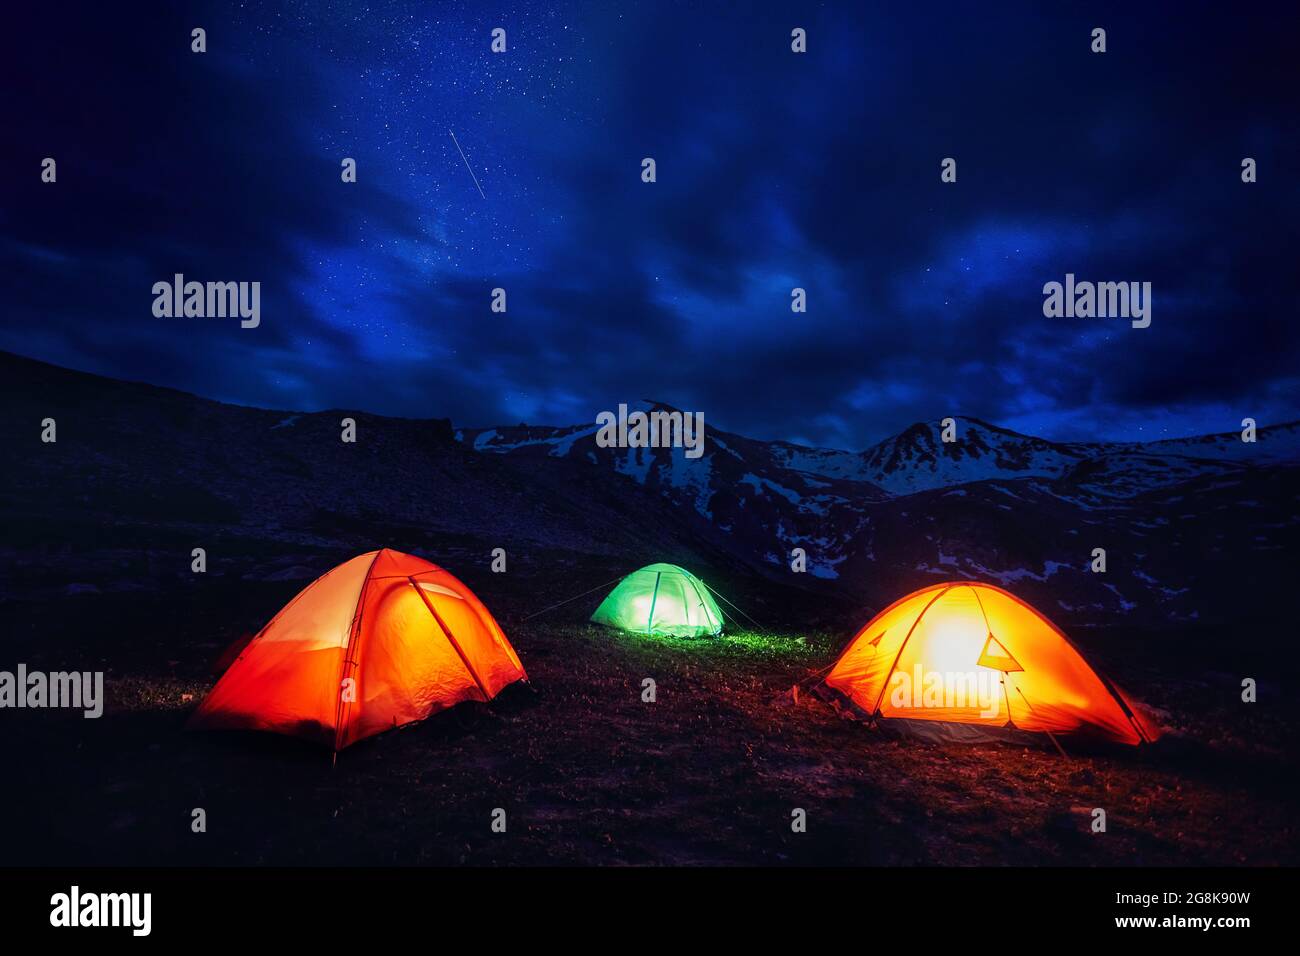 Giallo arancio e verde tenda da campeggio nella gola di montagna sotto il cielo notturno con stelle Foto Stock